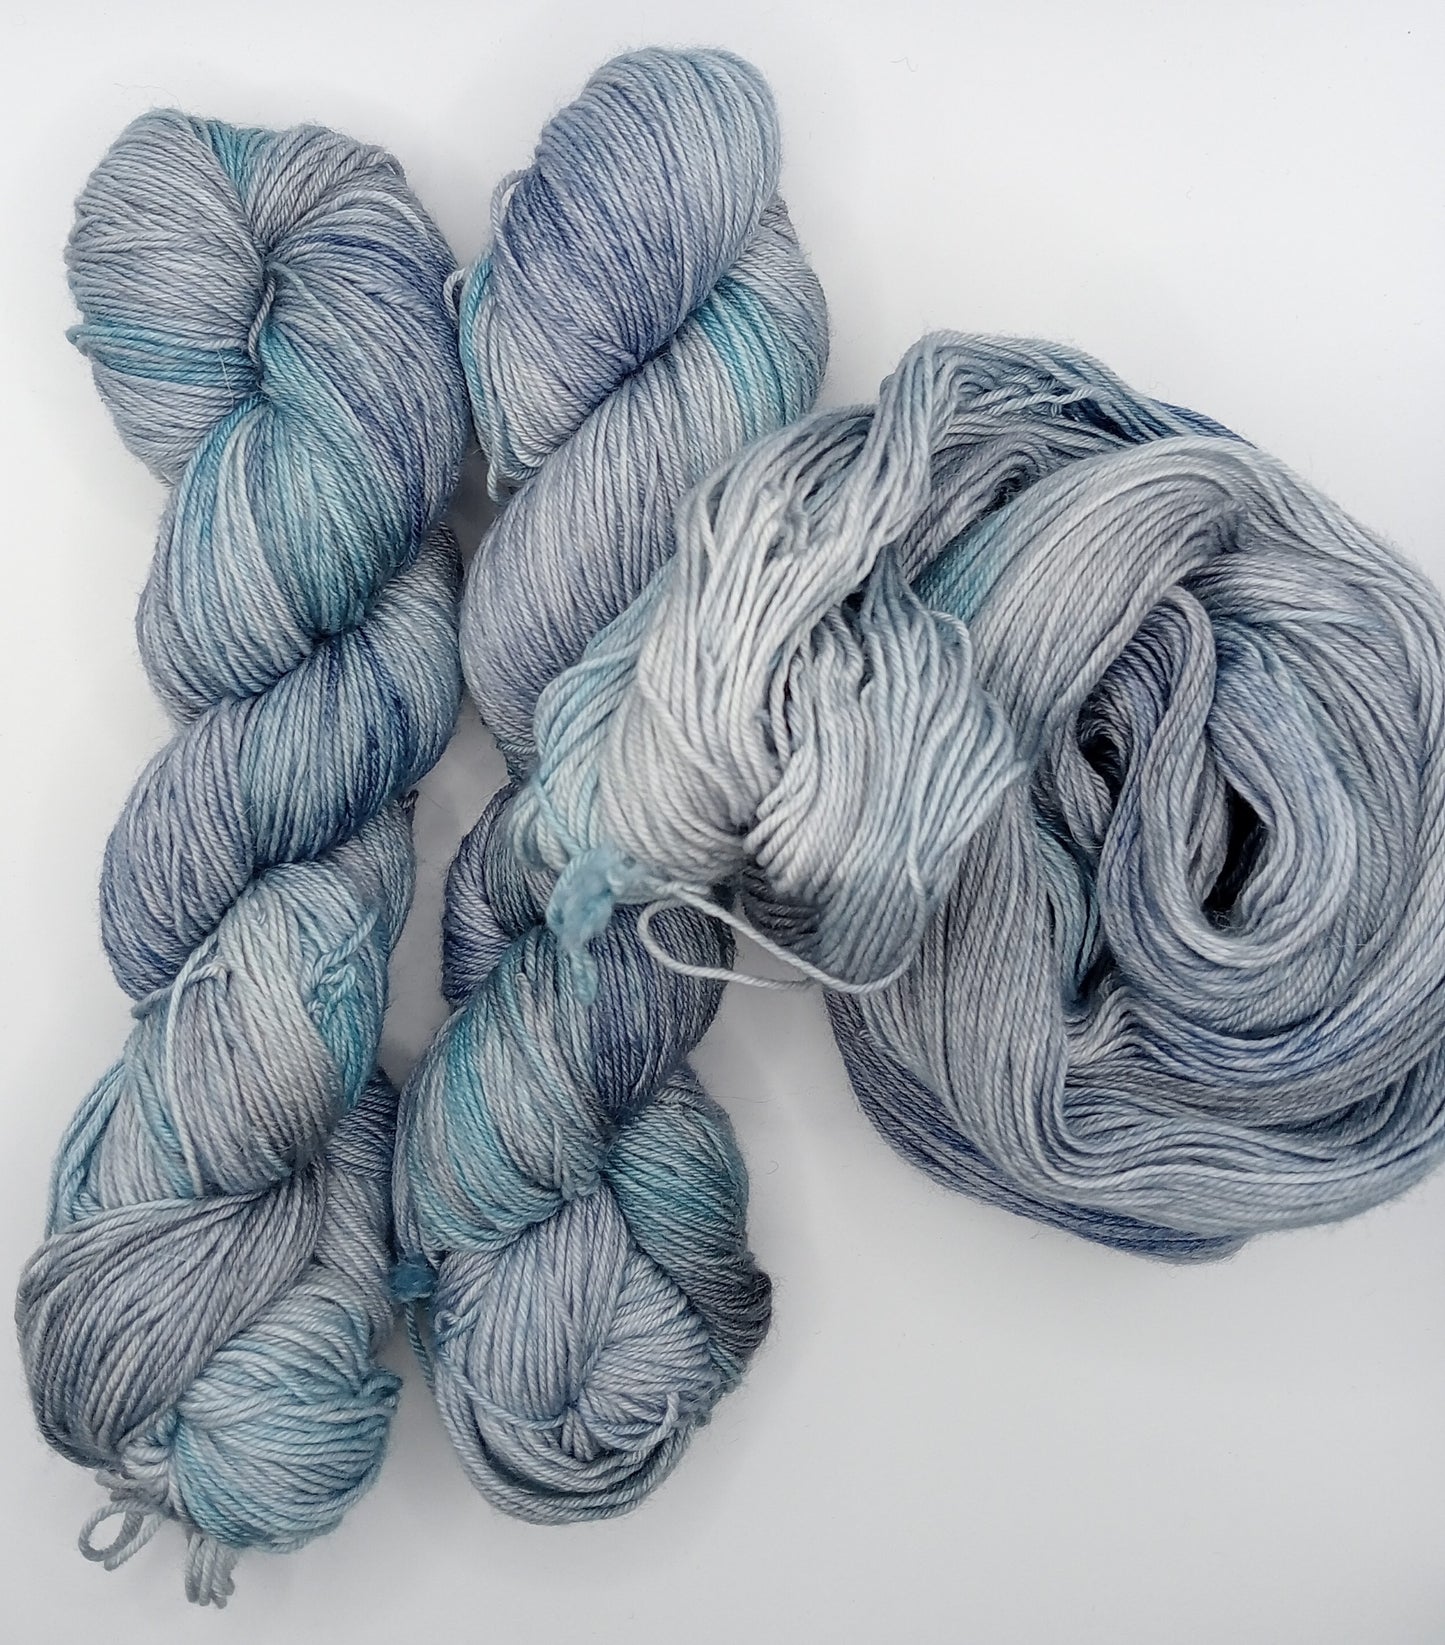 100G Merino/baby Alpaca/Silk hand dyed Yarn 4 Ply- "Albacore"